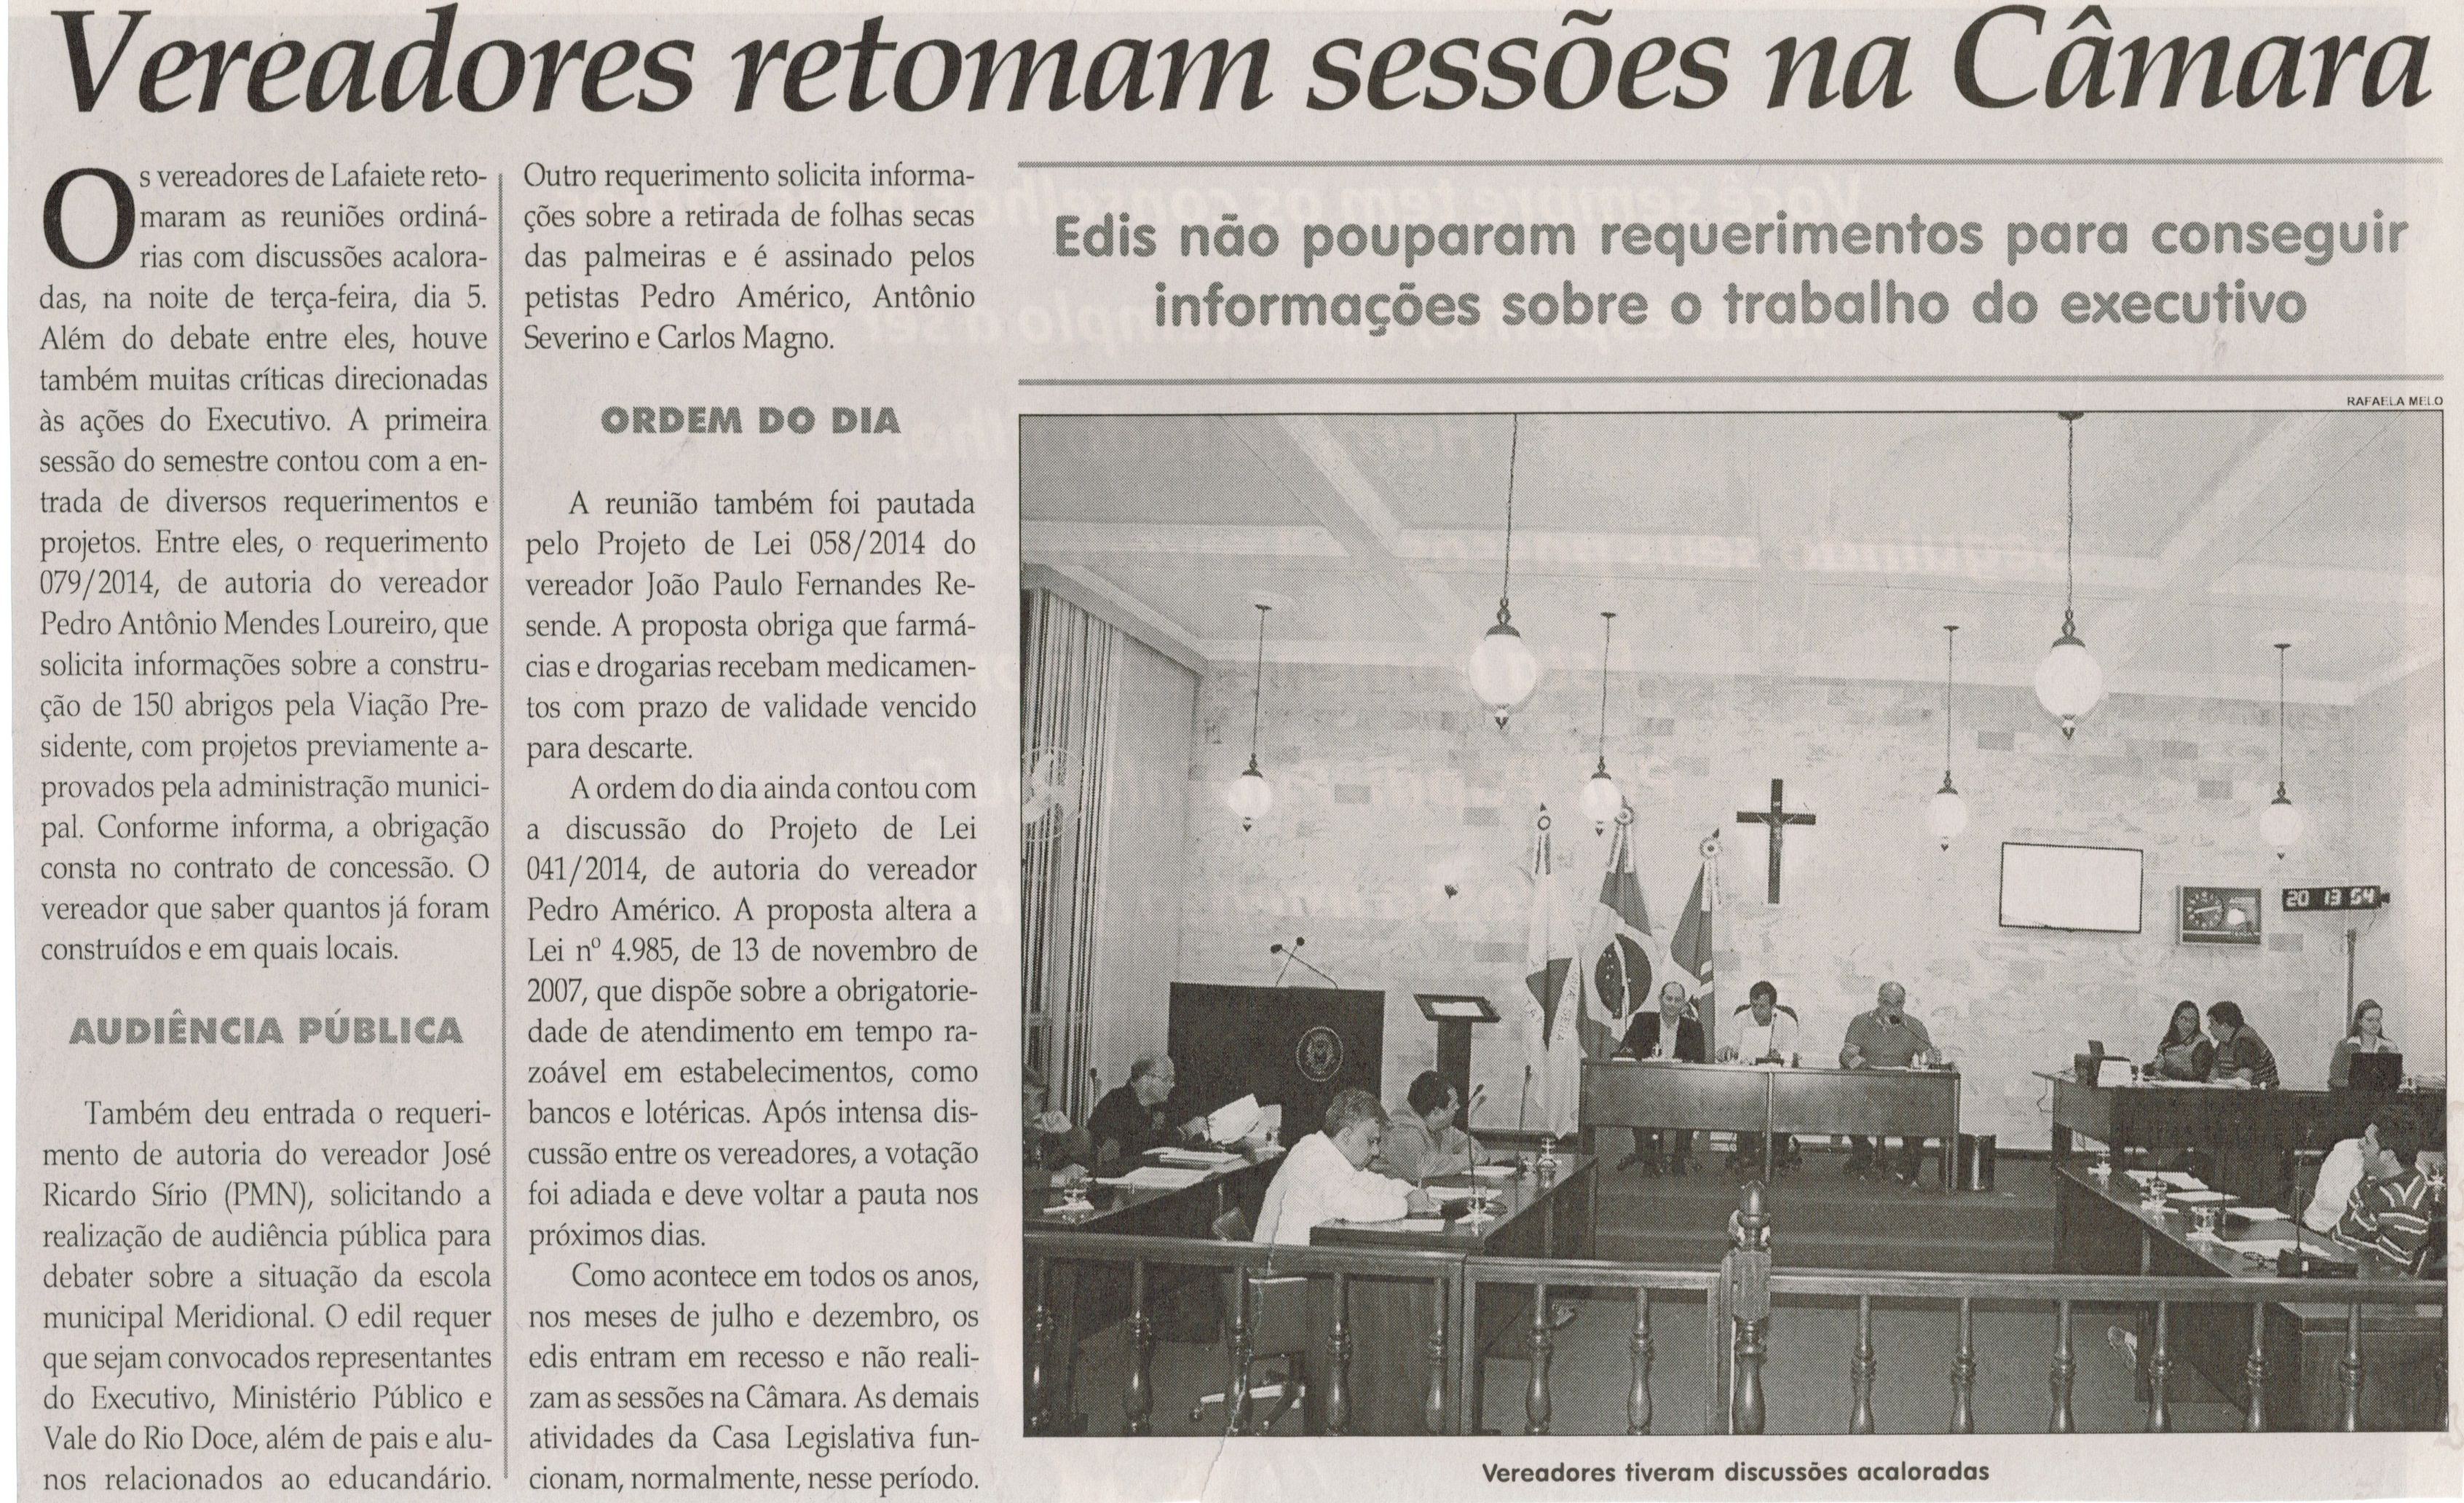 Vereadores retomam sessões na Câmara. Jornal Correio da Cidade, Conselheiro Lafaiete, 09 ago. 2014, p. 2.